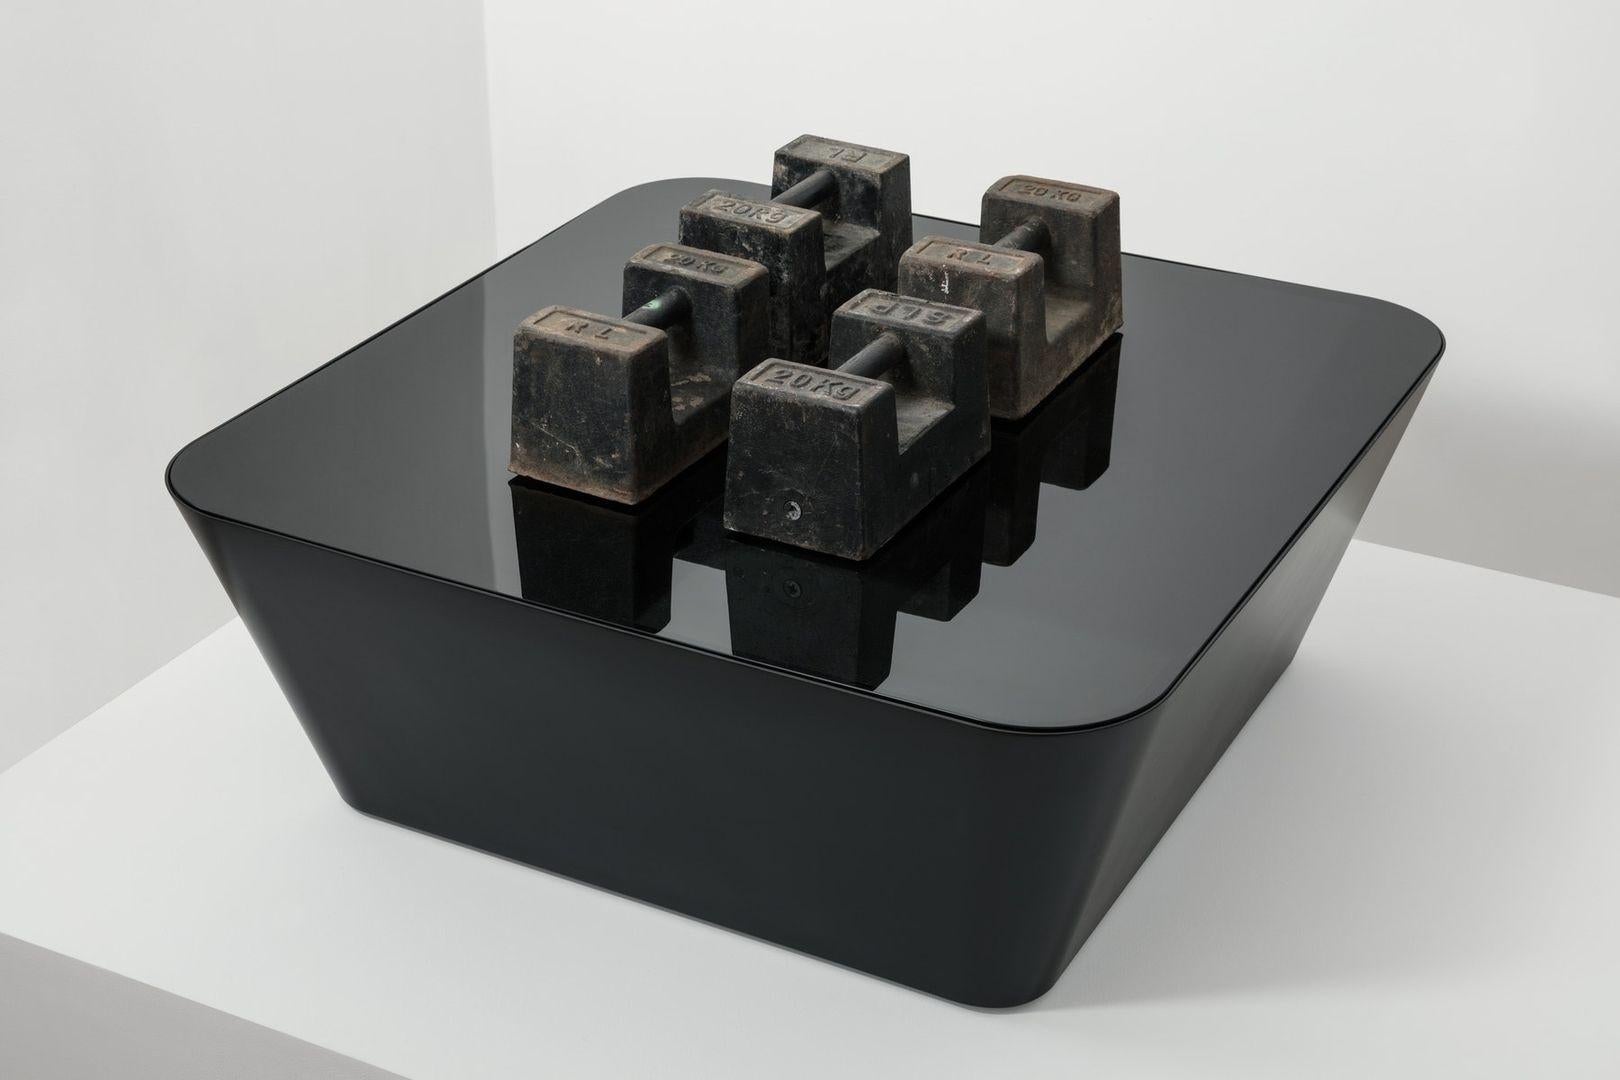 La table Zero-In crée une illusion d'apesanteur, avec des parois inclinées sans soudure à des angles inattendus, surmontées d'une surface en verre, le tout soutenu par des pieds cachés qui créent une zone d'ombre sous la structure.

Construite à